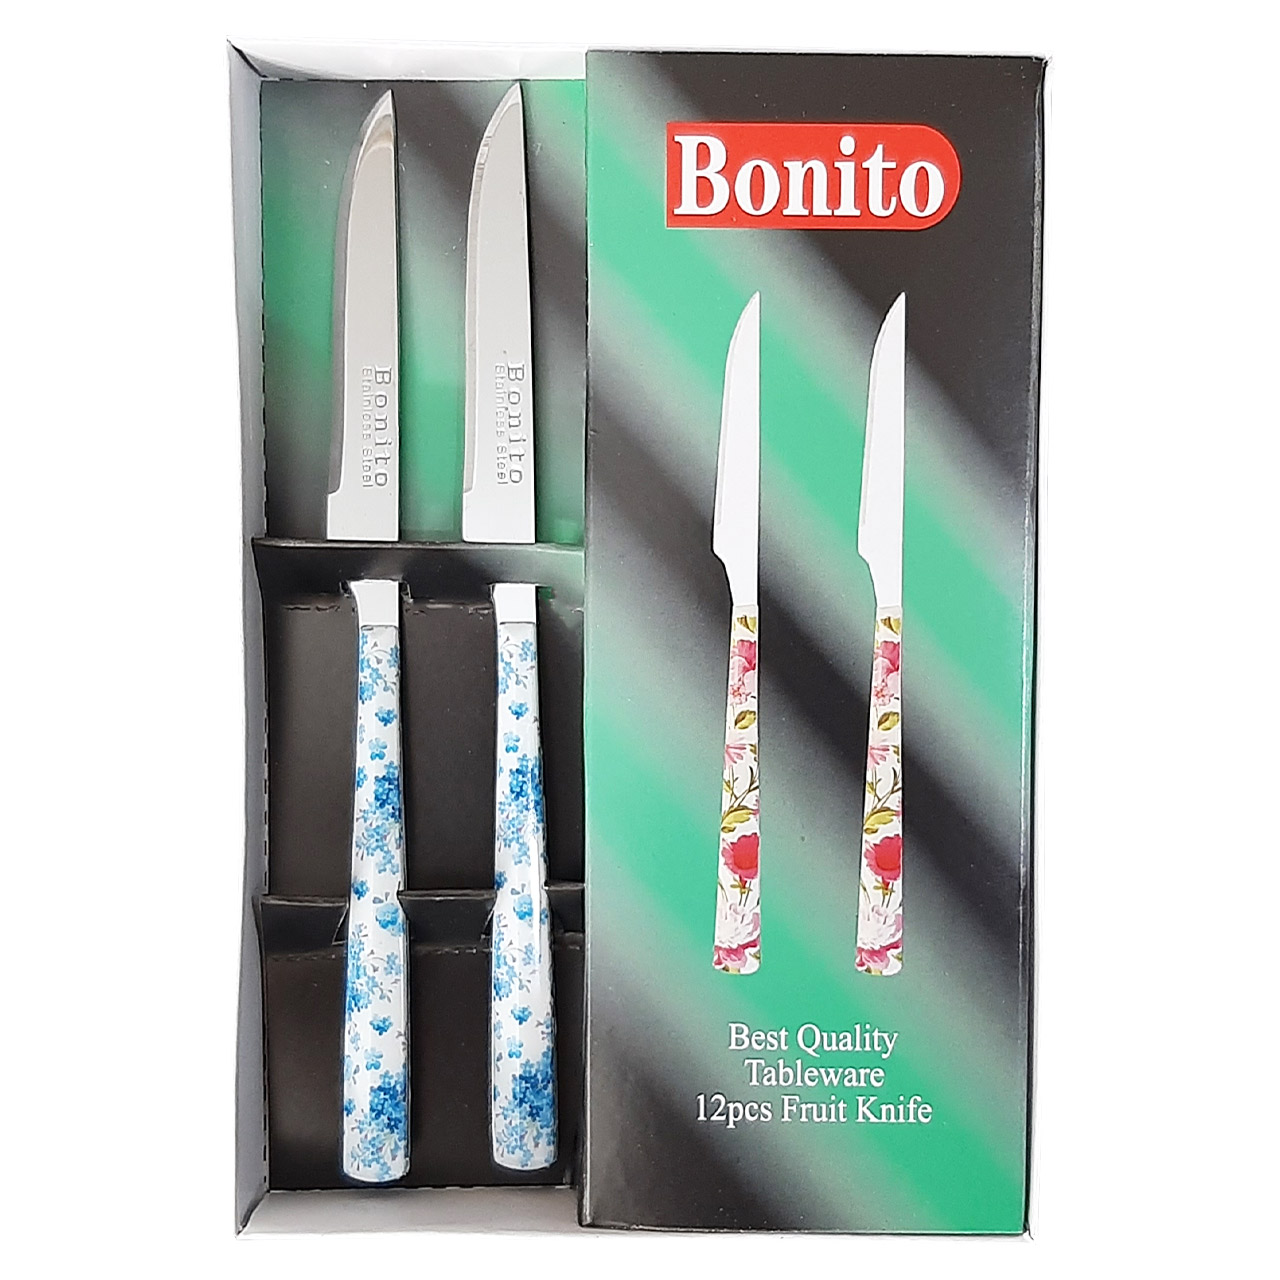 نقد و بررسی چاقو میوه خوری بونیتو کد Bon2 بسته 12 عددی توسط خریداران